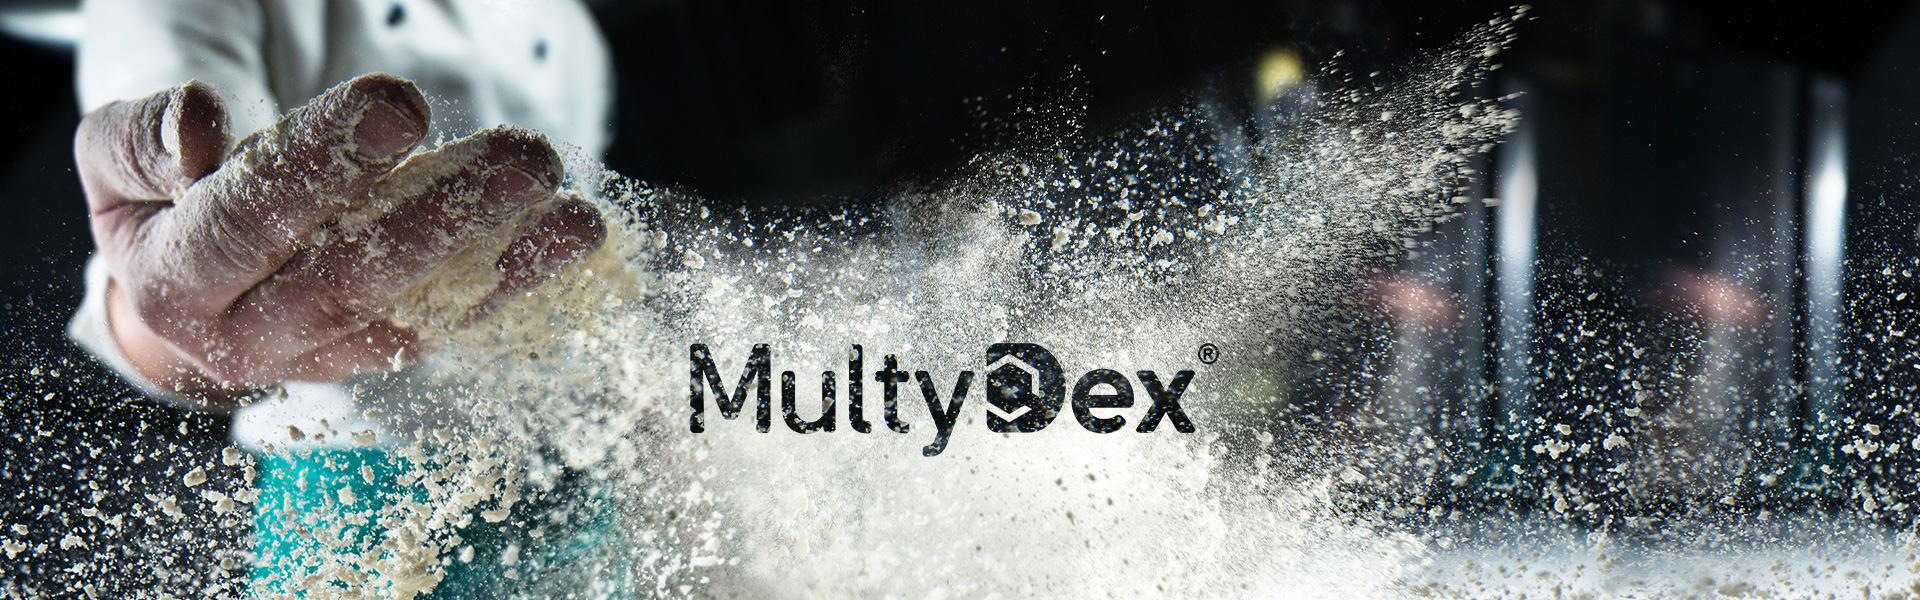 MultyDex®